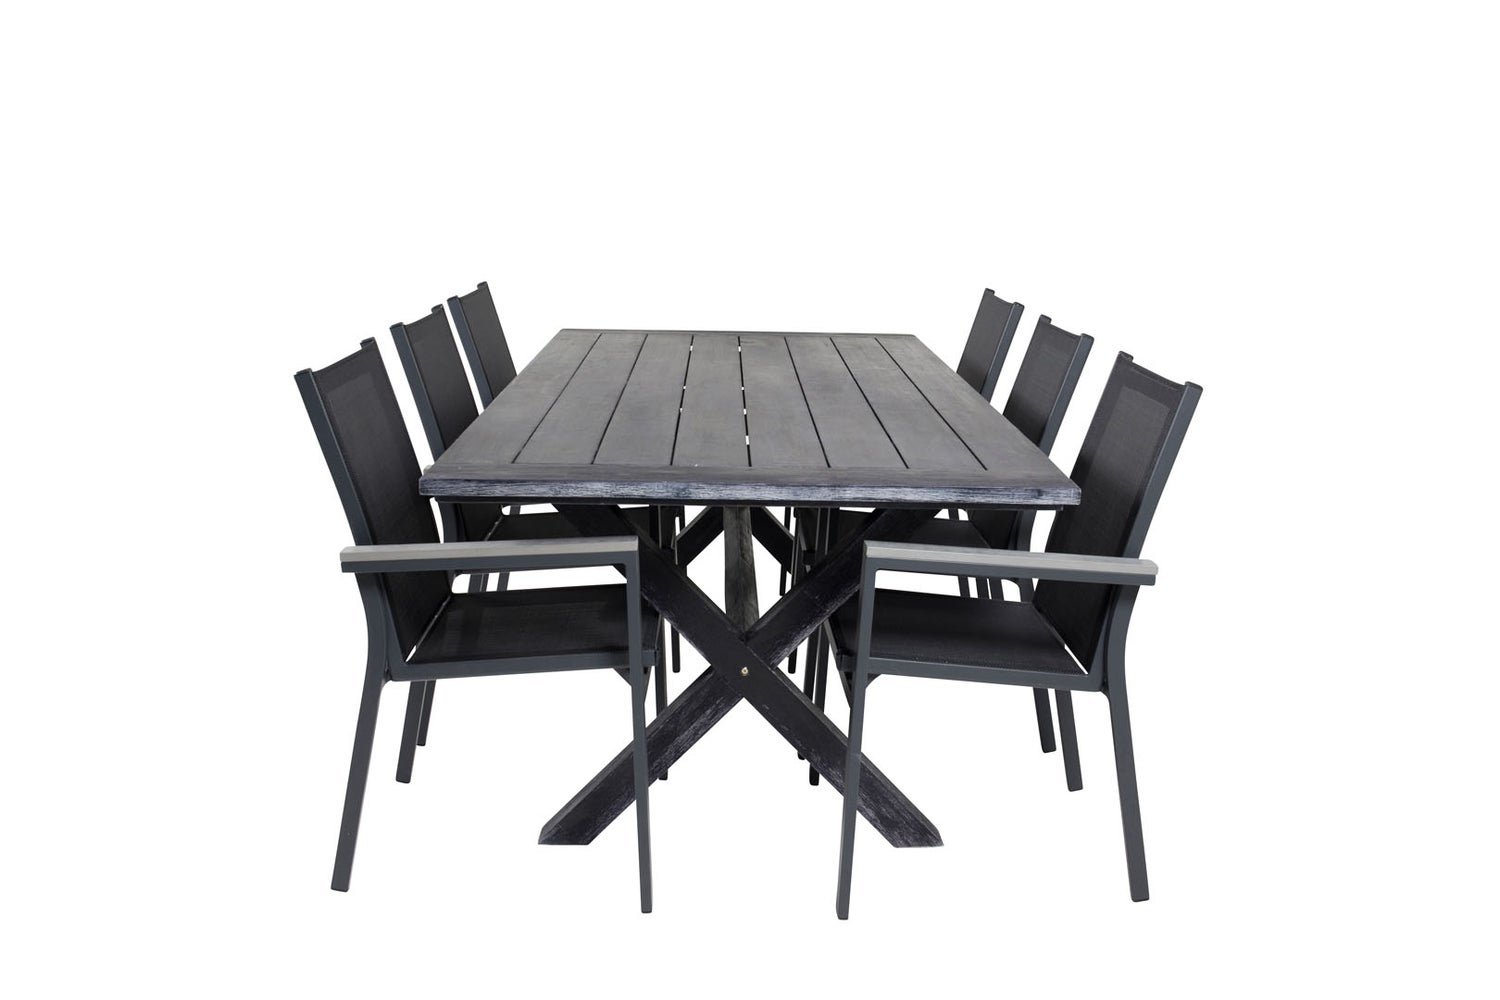 Rives Gartenset Tisch 100x200cm und 6 Stühle Parma schwarz.